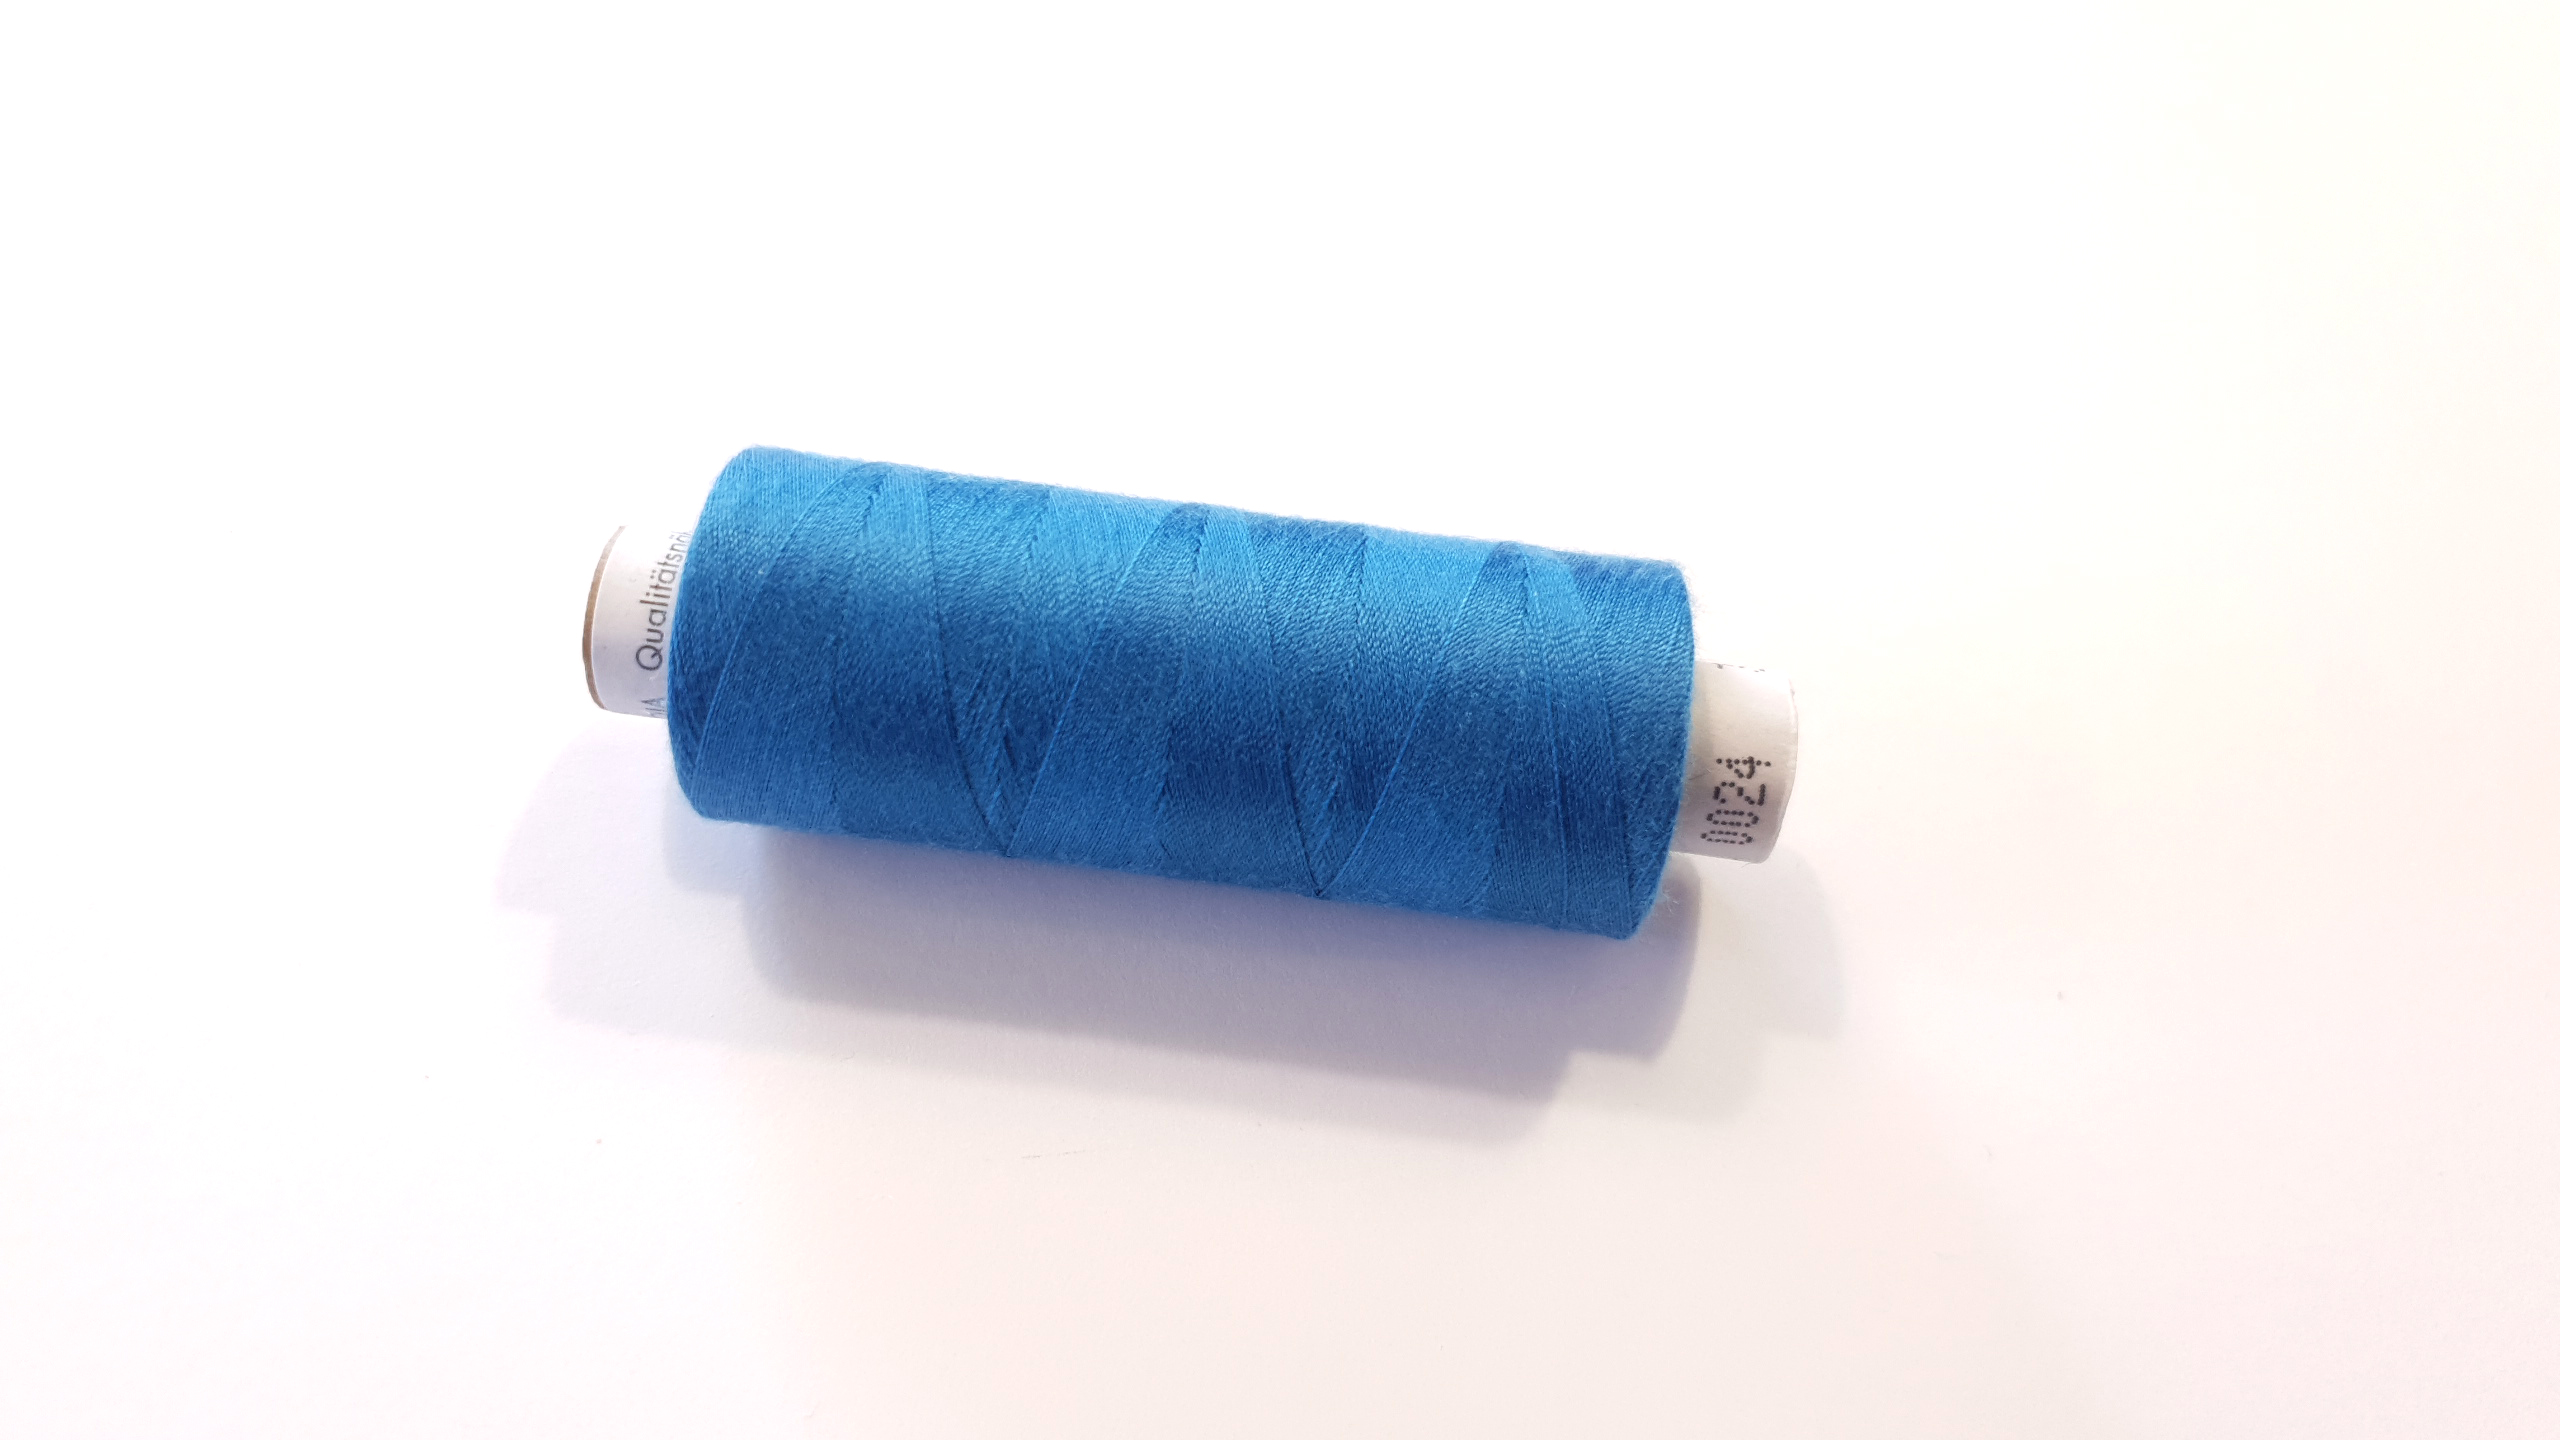 Sewing thread 500m- blue 24